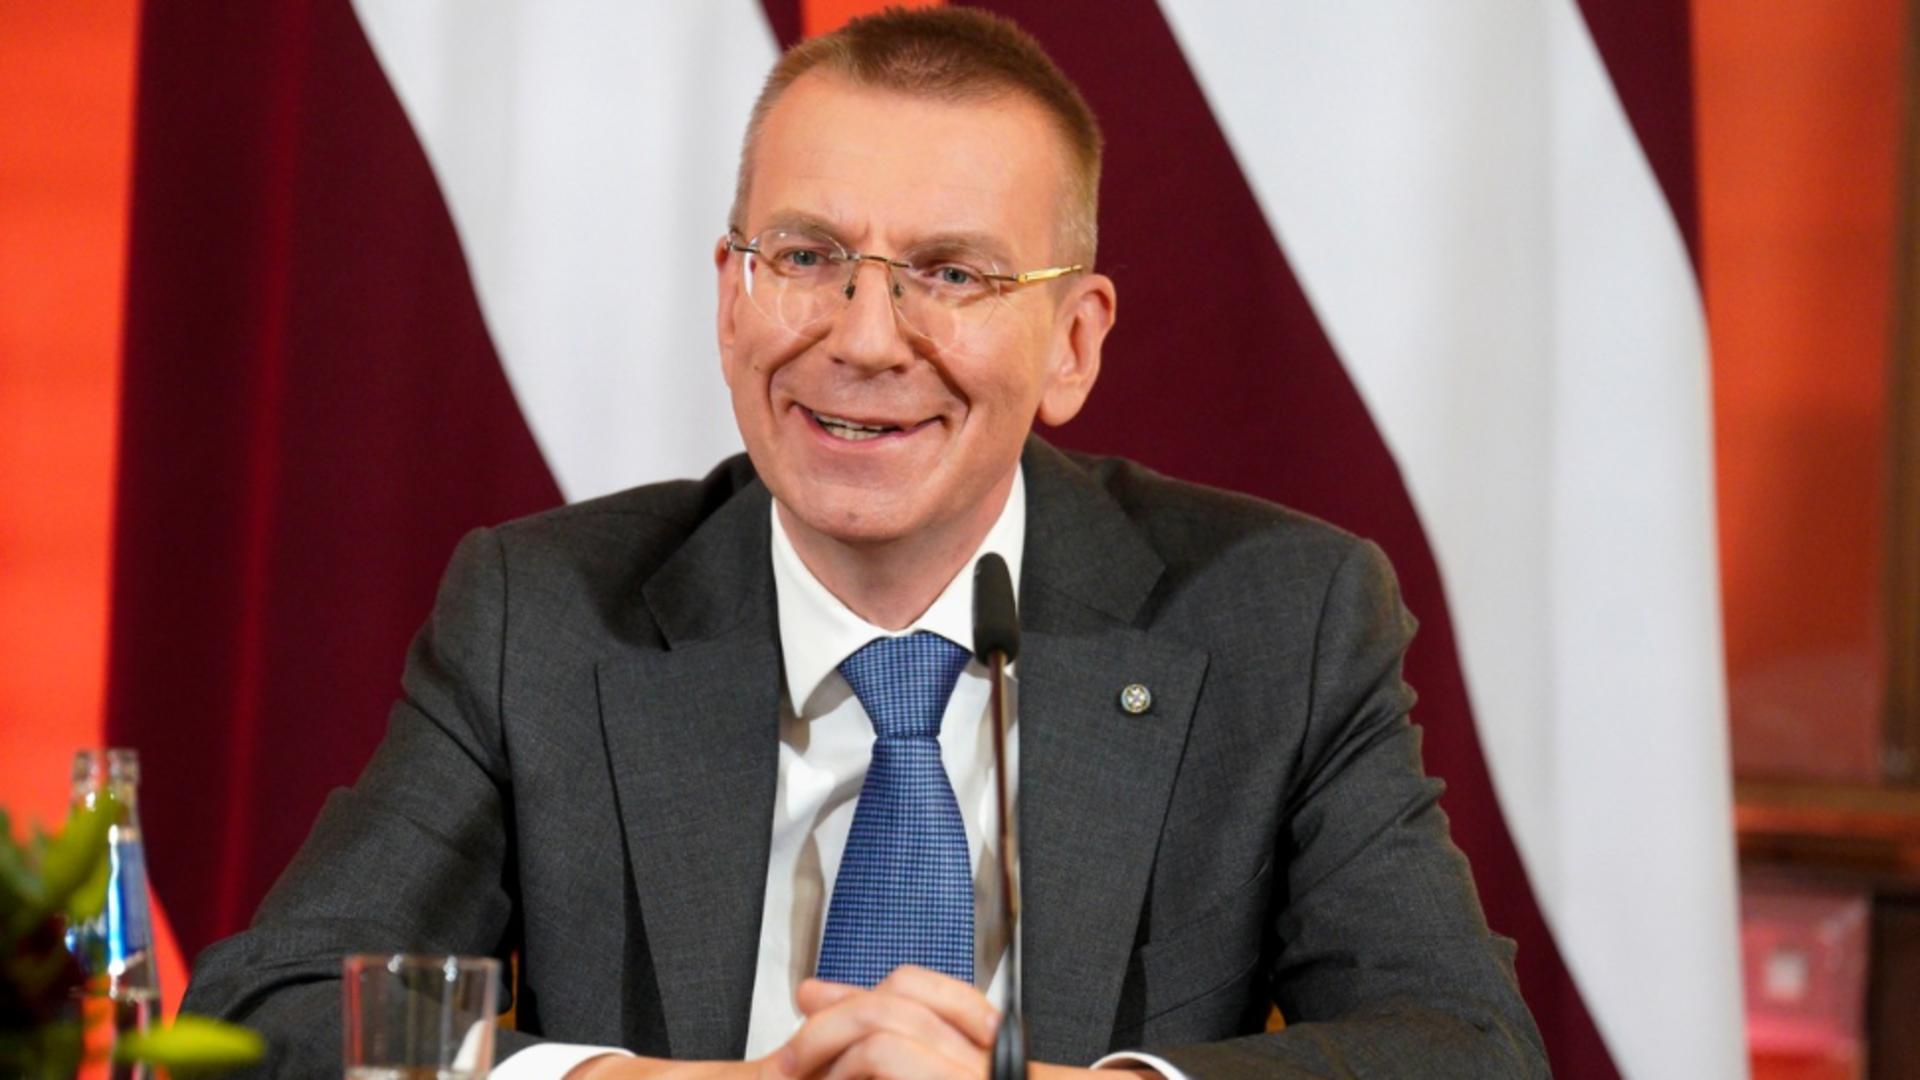 Edgars Rinkevics este noul președinte al Letoniei și primul președinte homosexual din UE. Foto: Profimedia